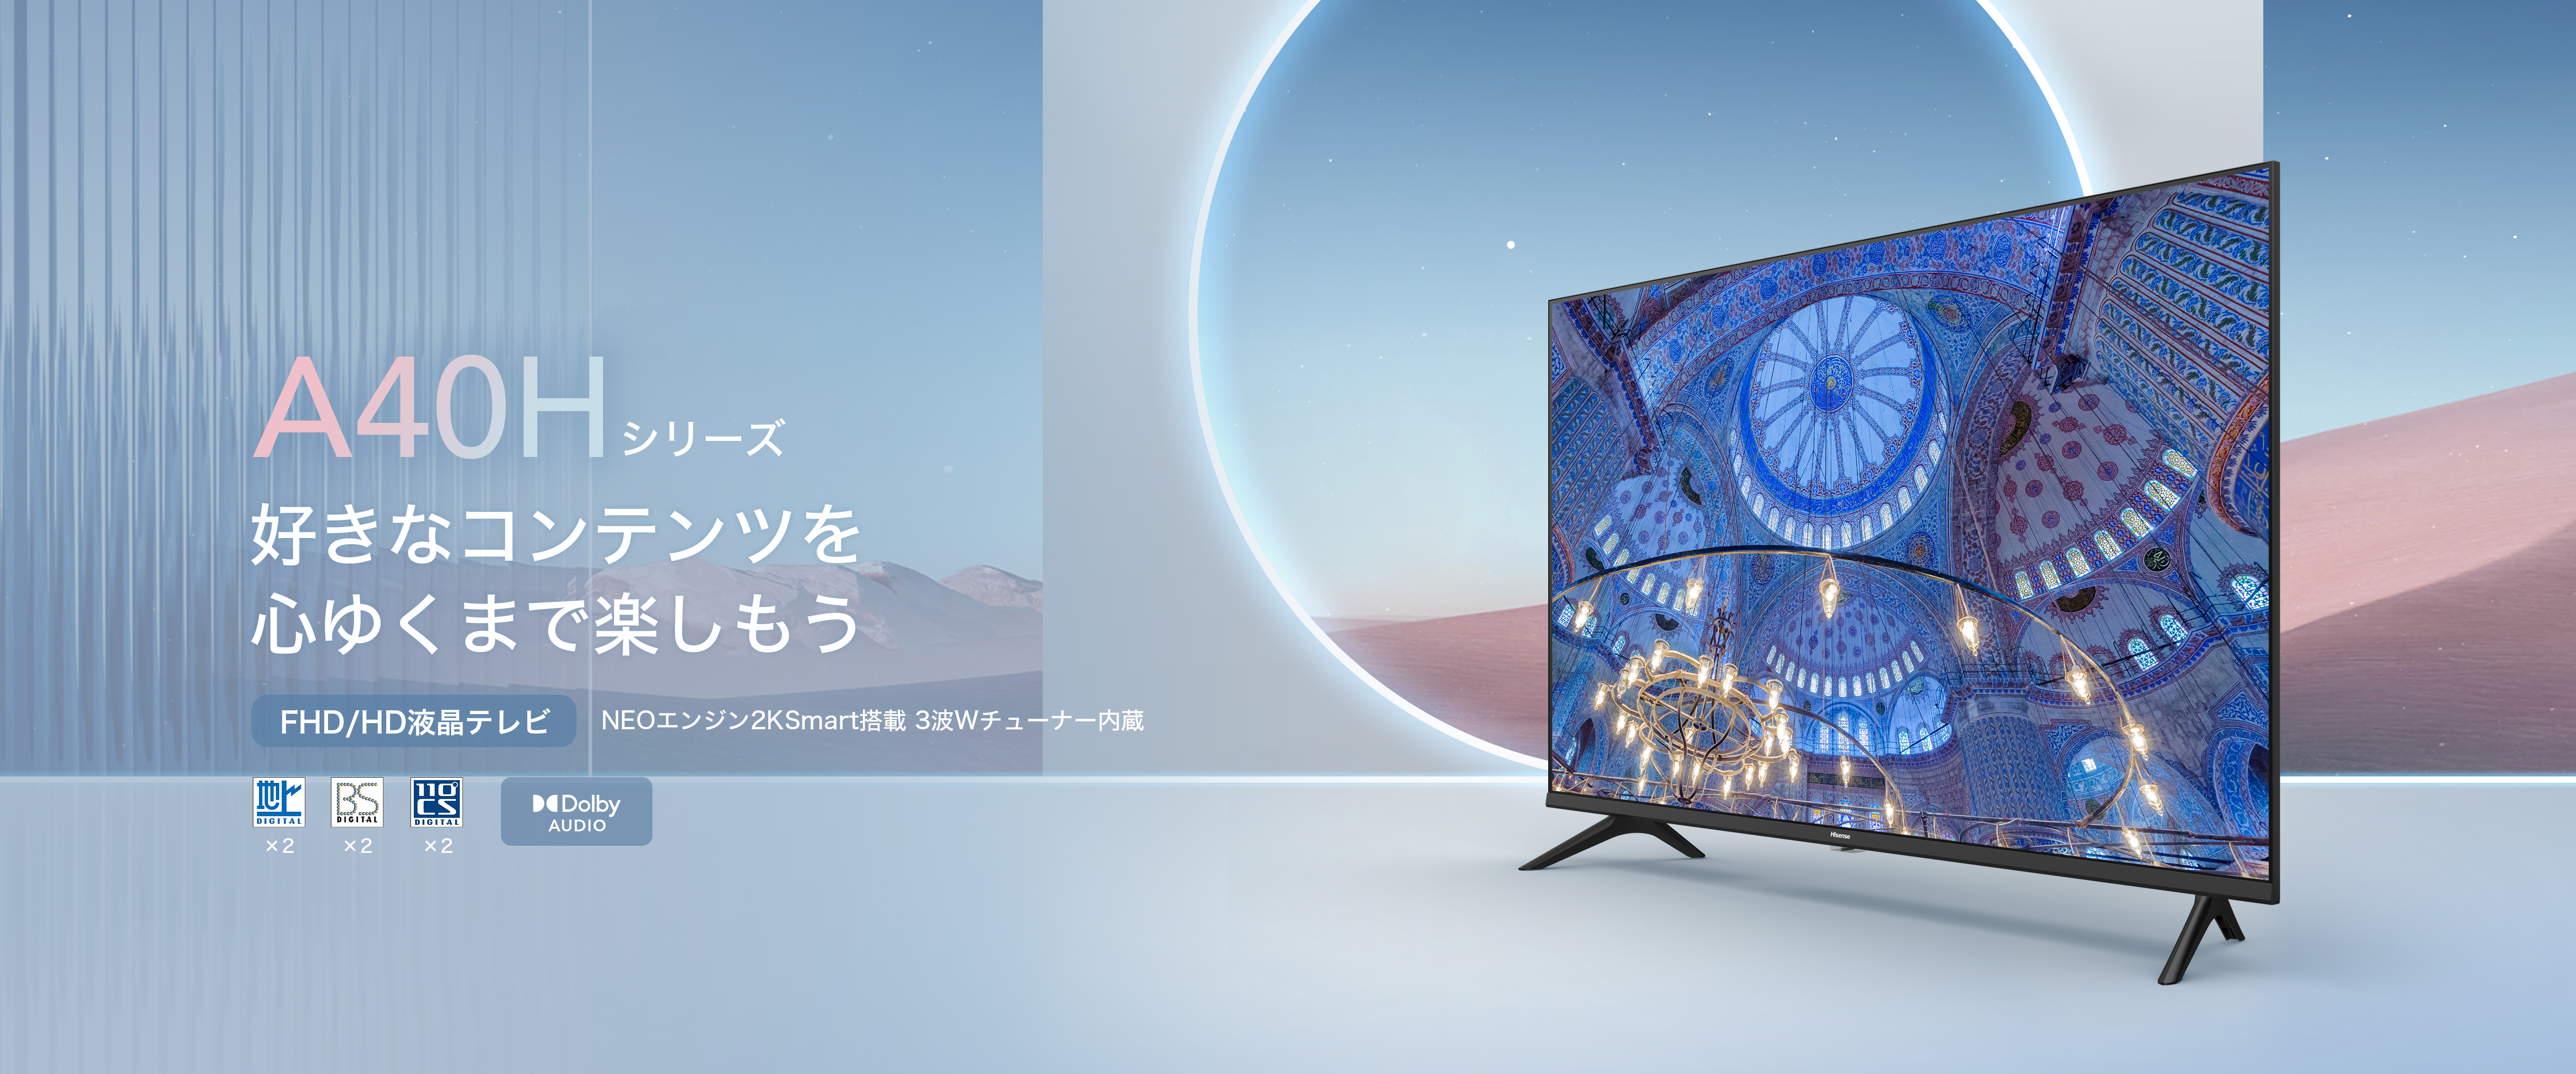 テレビ/映像機器 テレビ A40H | ハイセンスジャパン株式会社